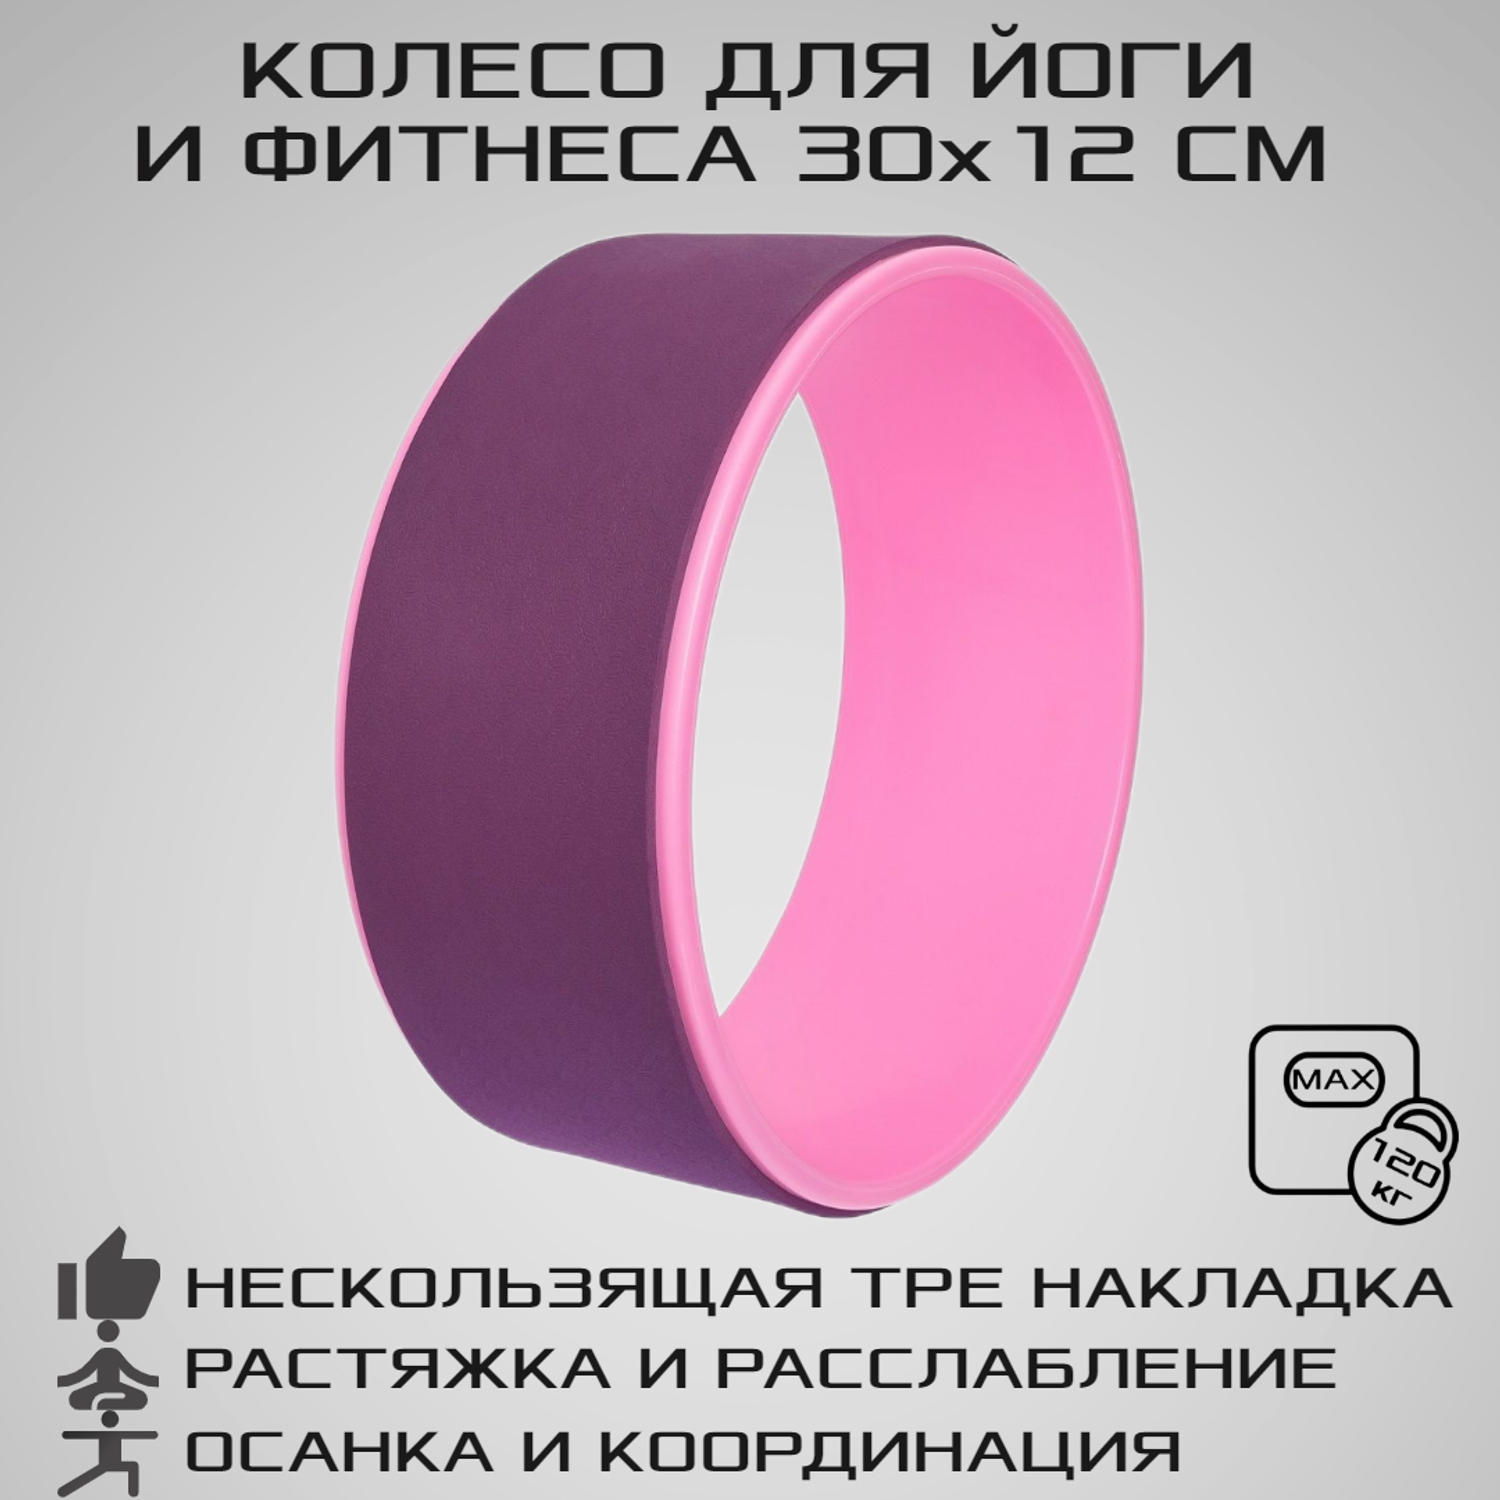 Колесо для йоги STRONG BODY фитнеса и пилатес 30 см х 12 см пурпурно-розовое - фото 1